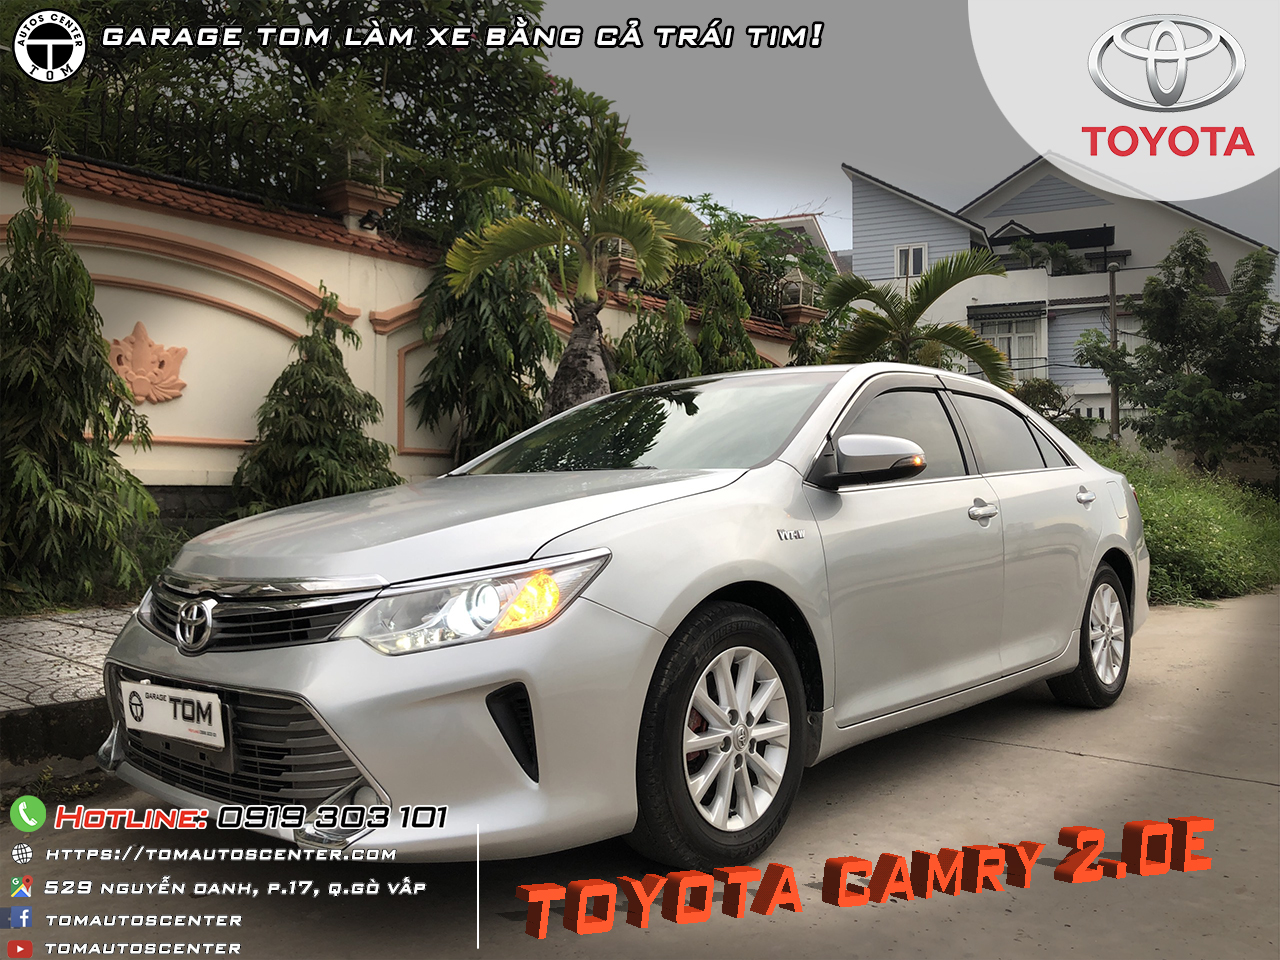 Thông tin xe Toyota Camry 20E 2016  Toyota Cần Thơ  LH 0978 666777